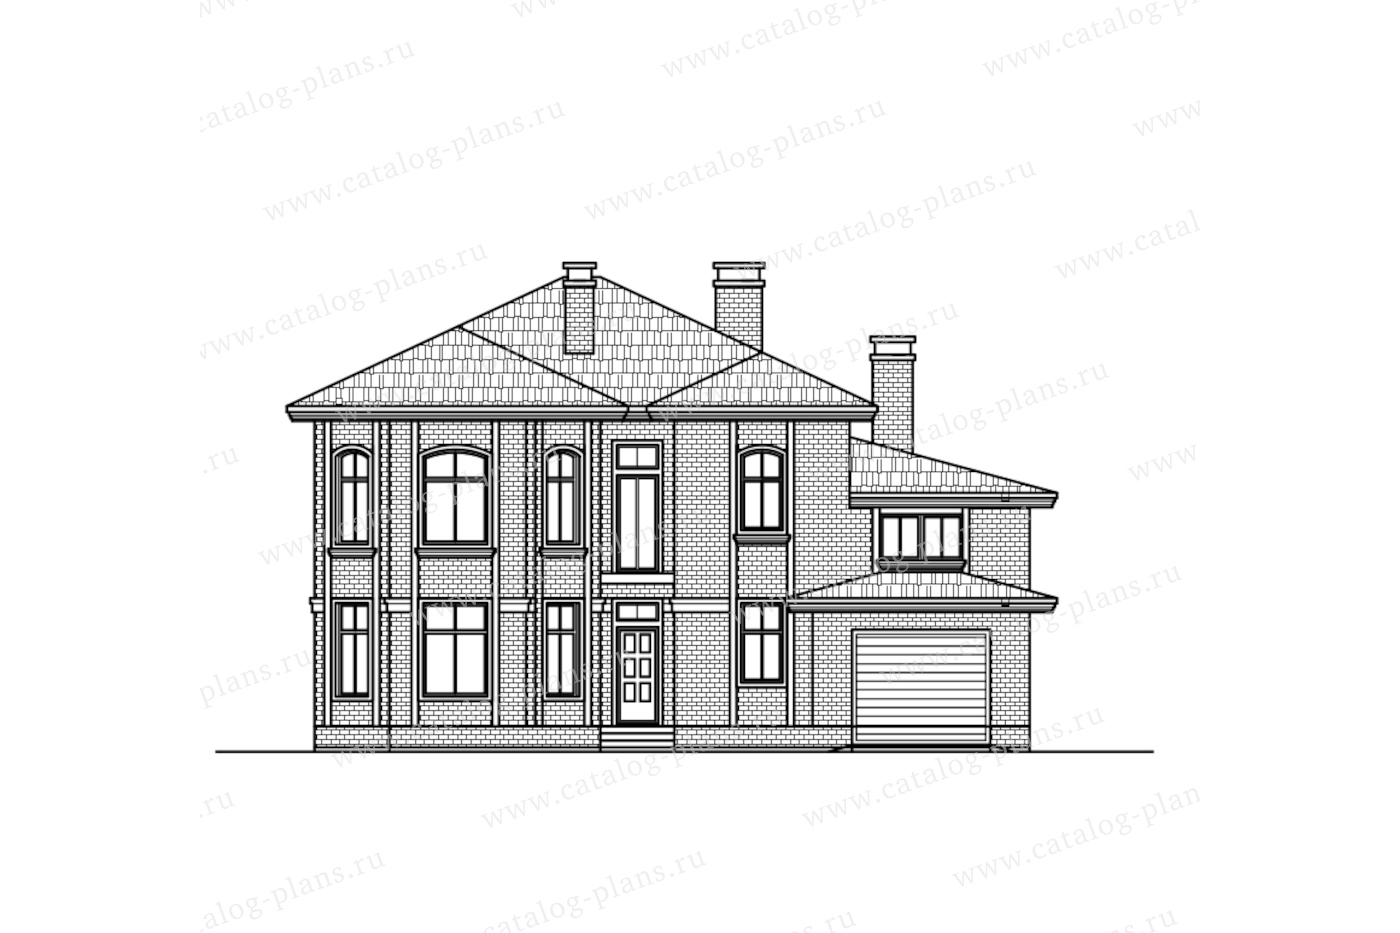 Проект 58-26FL, жилой дом, материал - газобетонные блоки 400, количество этажей - 2, архитектурный стиль - европейский, фундамент - монолитная ж/б плита